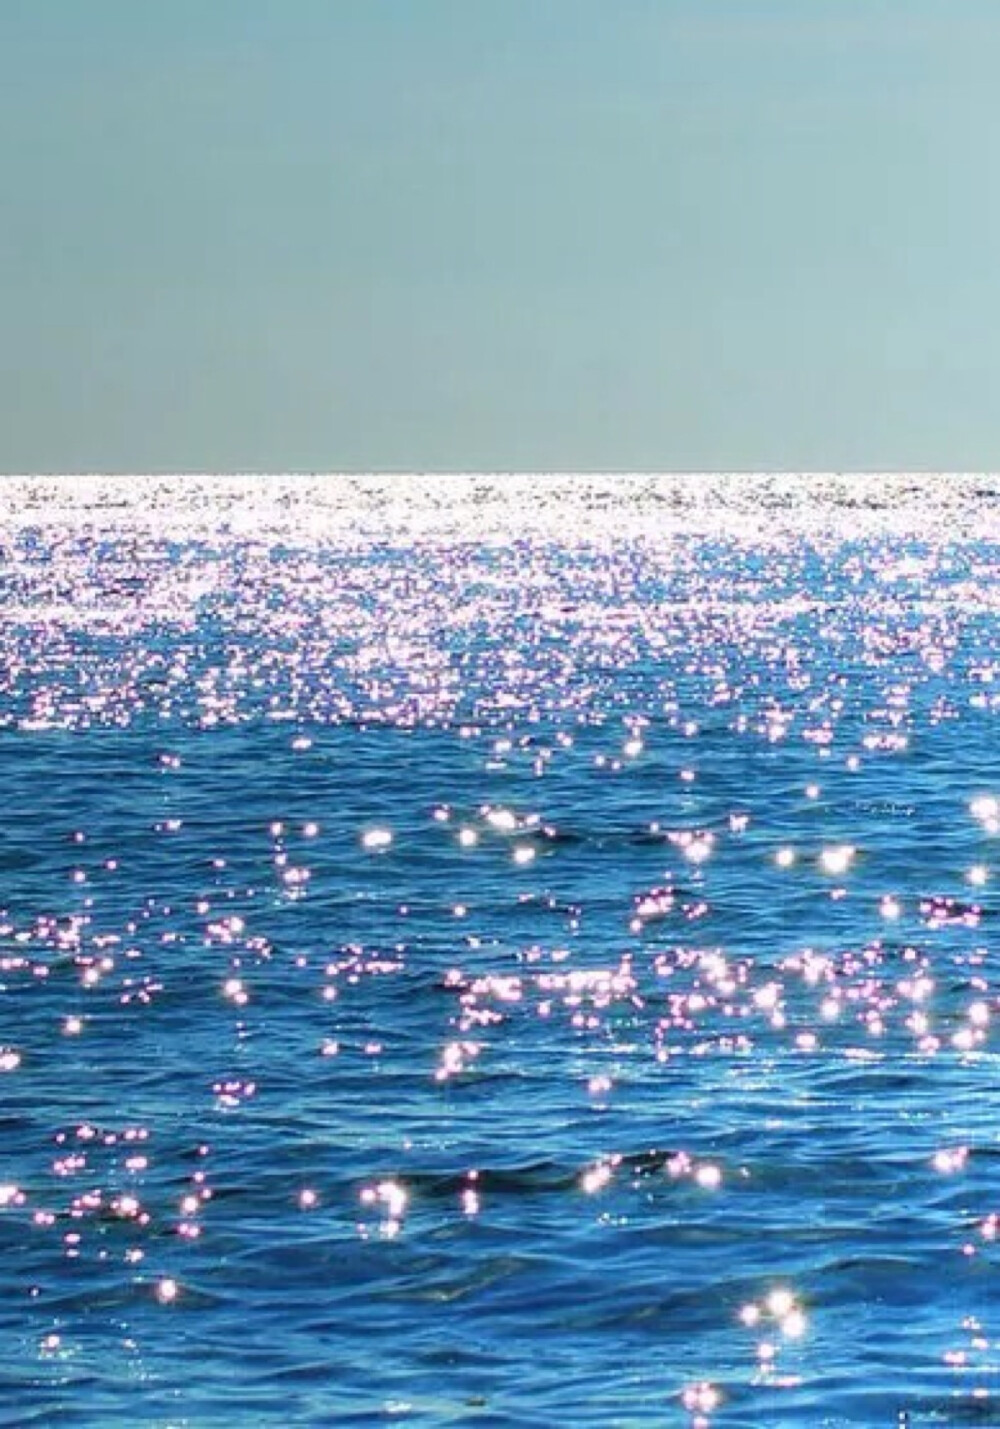 唯美自然风景 蓝天碧水 海洋 海面 波光粼粼 唯美壁纸 iphone手机壁纸